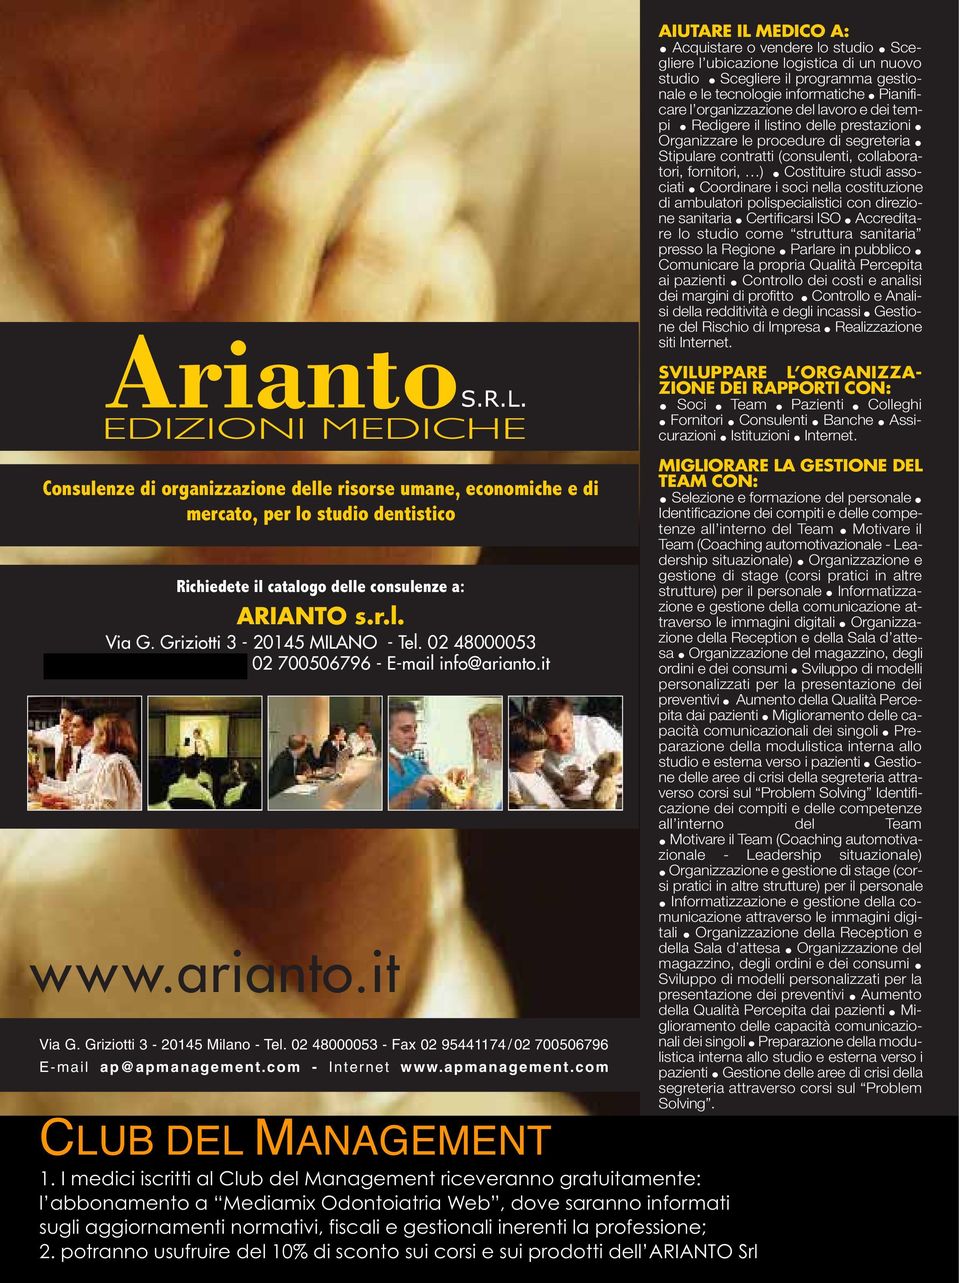 Griziotti 3-20145 Milano - Tel. 02 48000053 - Fax 02 95441174 / 02 700506796 E-mail ap@apmanagement.com - Internet www.apmanagement.com CLUB DEL MANAGEMENT 1.